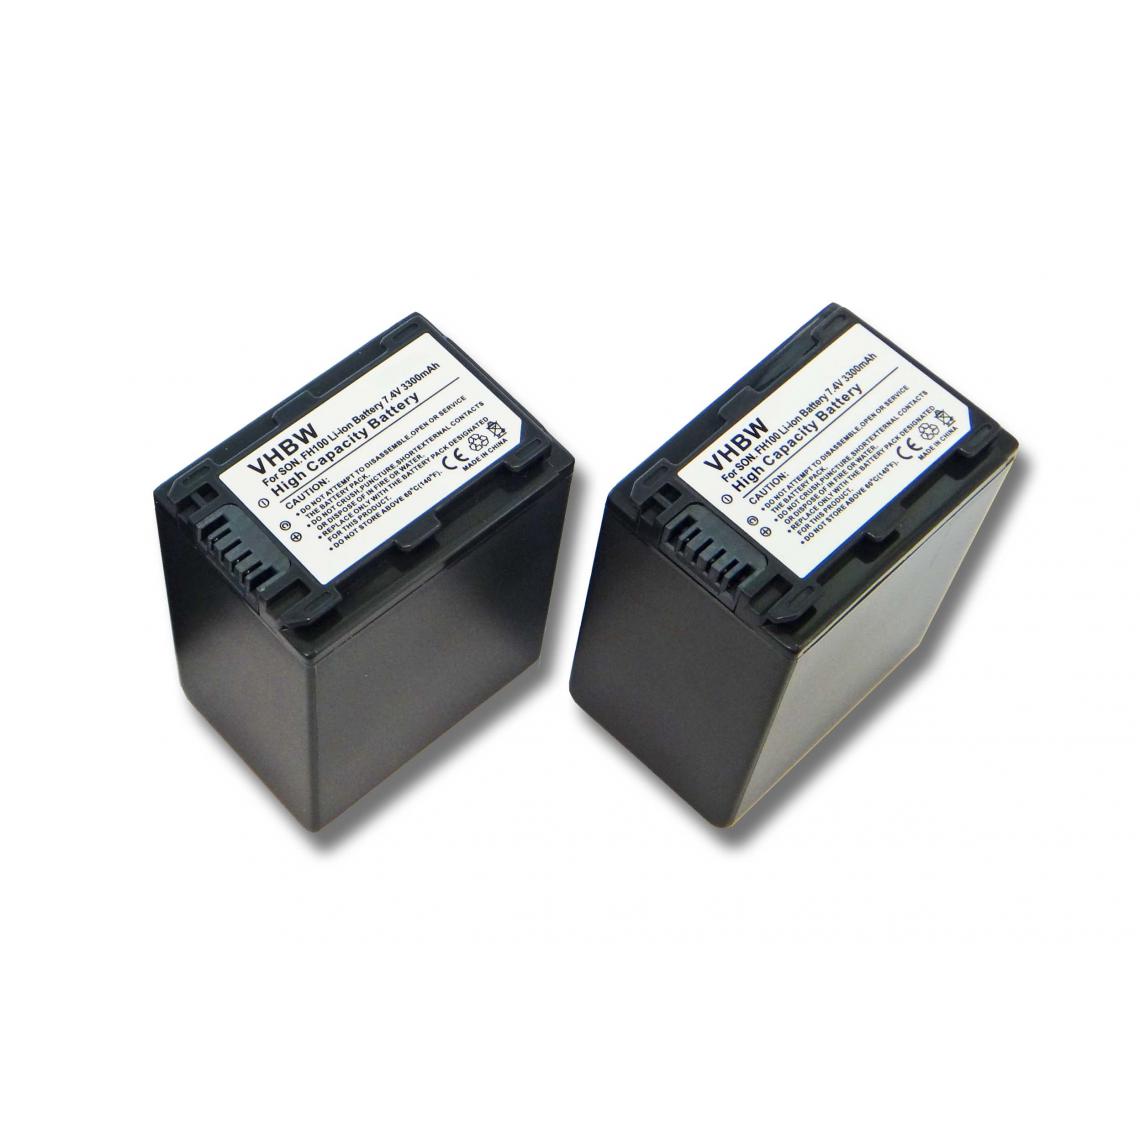 Vhbw - vhbw 2x batterie compatible avec Sony HDR-CX520, HDR-CX520VE, HDR-CX6(EK), HDR-HC5(E) caméra vidéo (3300mAh, 7,4V, Li-ion) avec puce d'information - Batterie Photo & Video